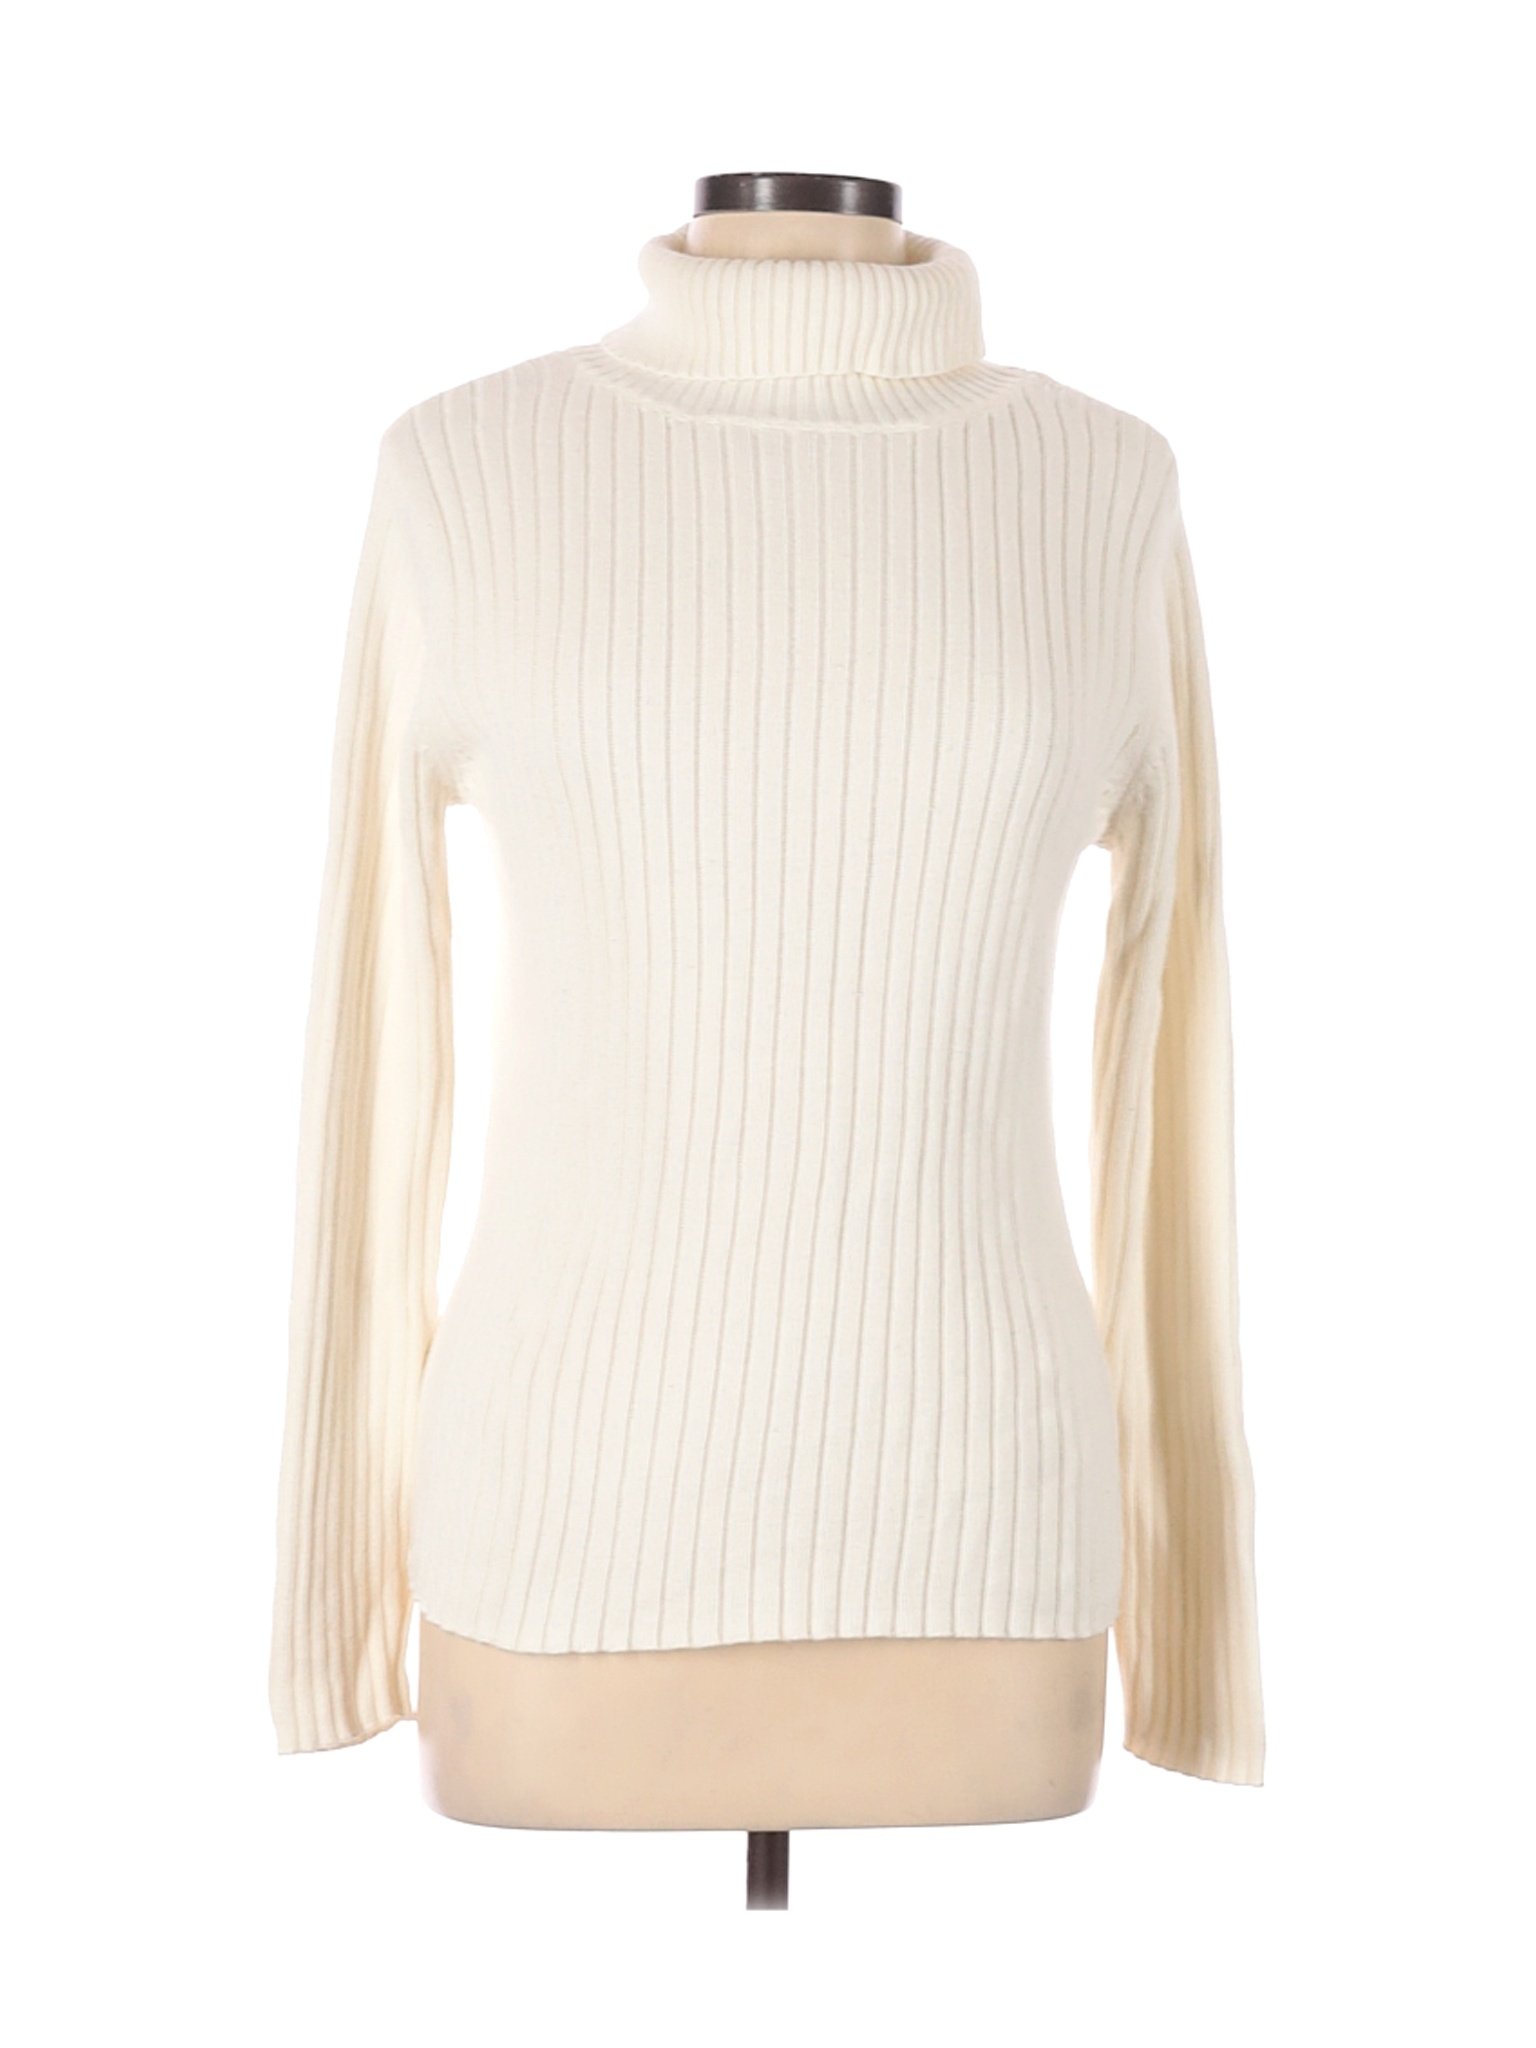 High Sierra Women Ivory Turtleneck Sweater L | eBay